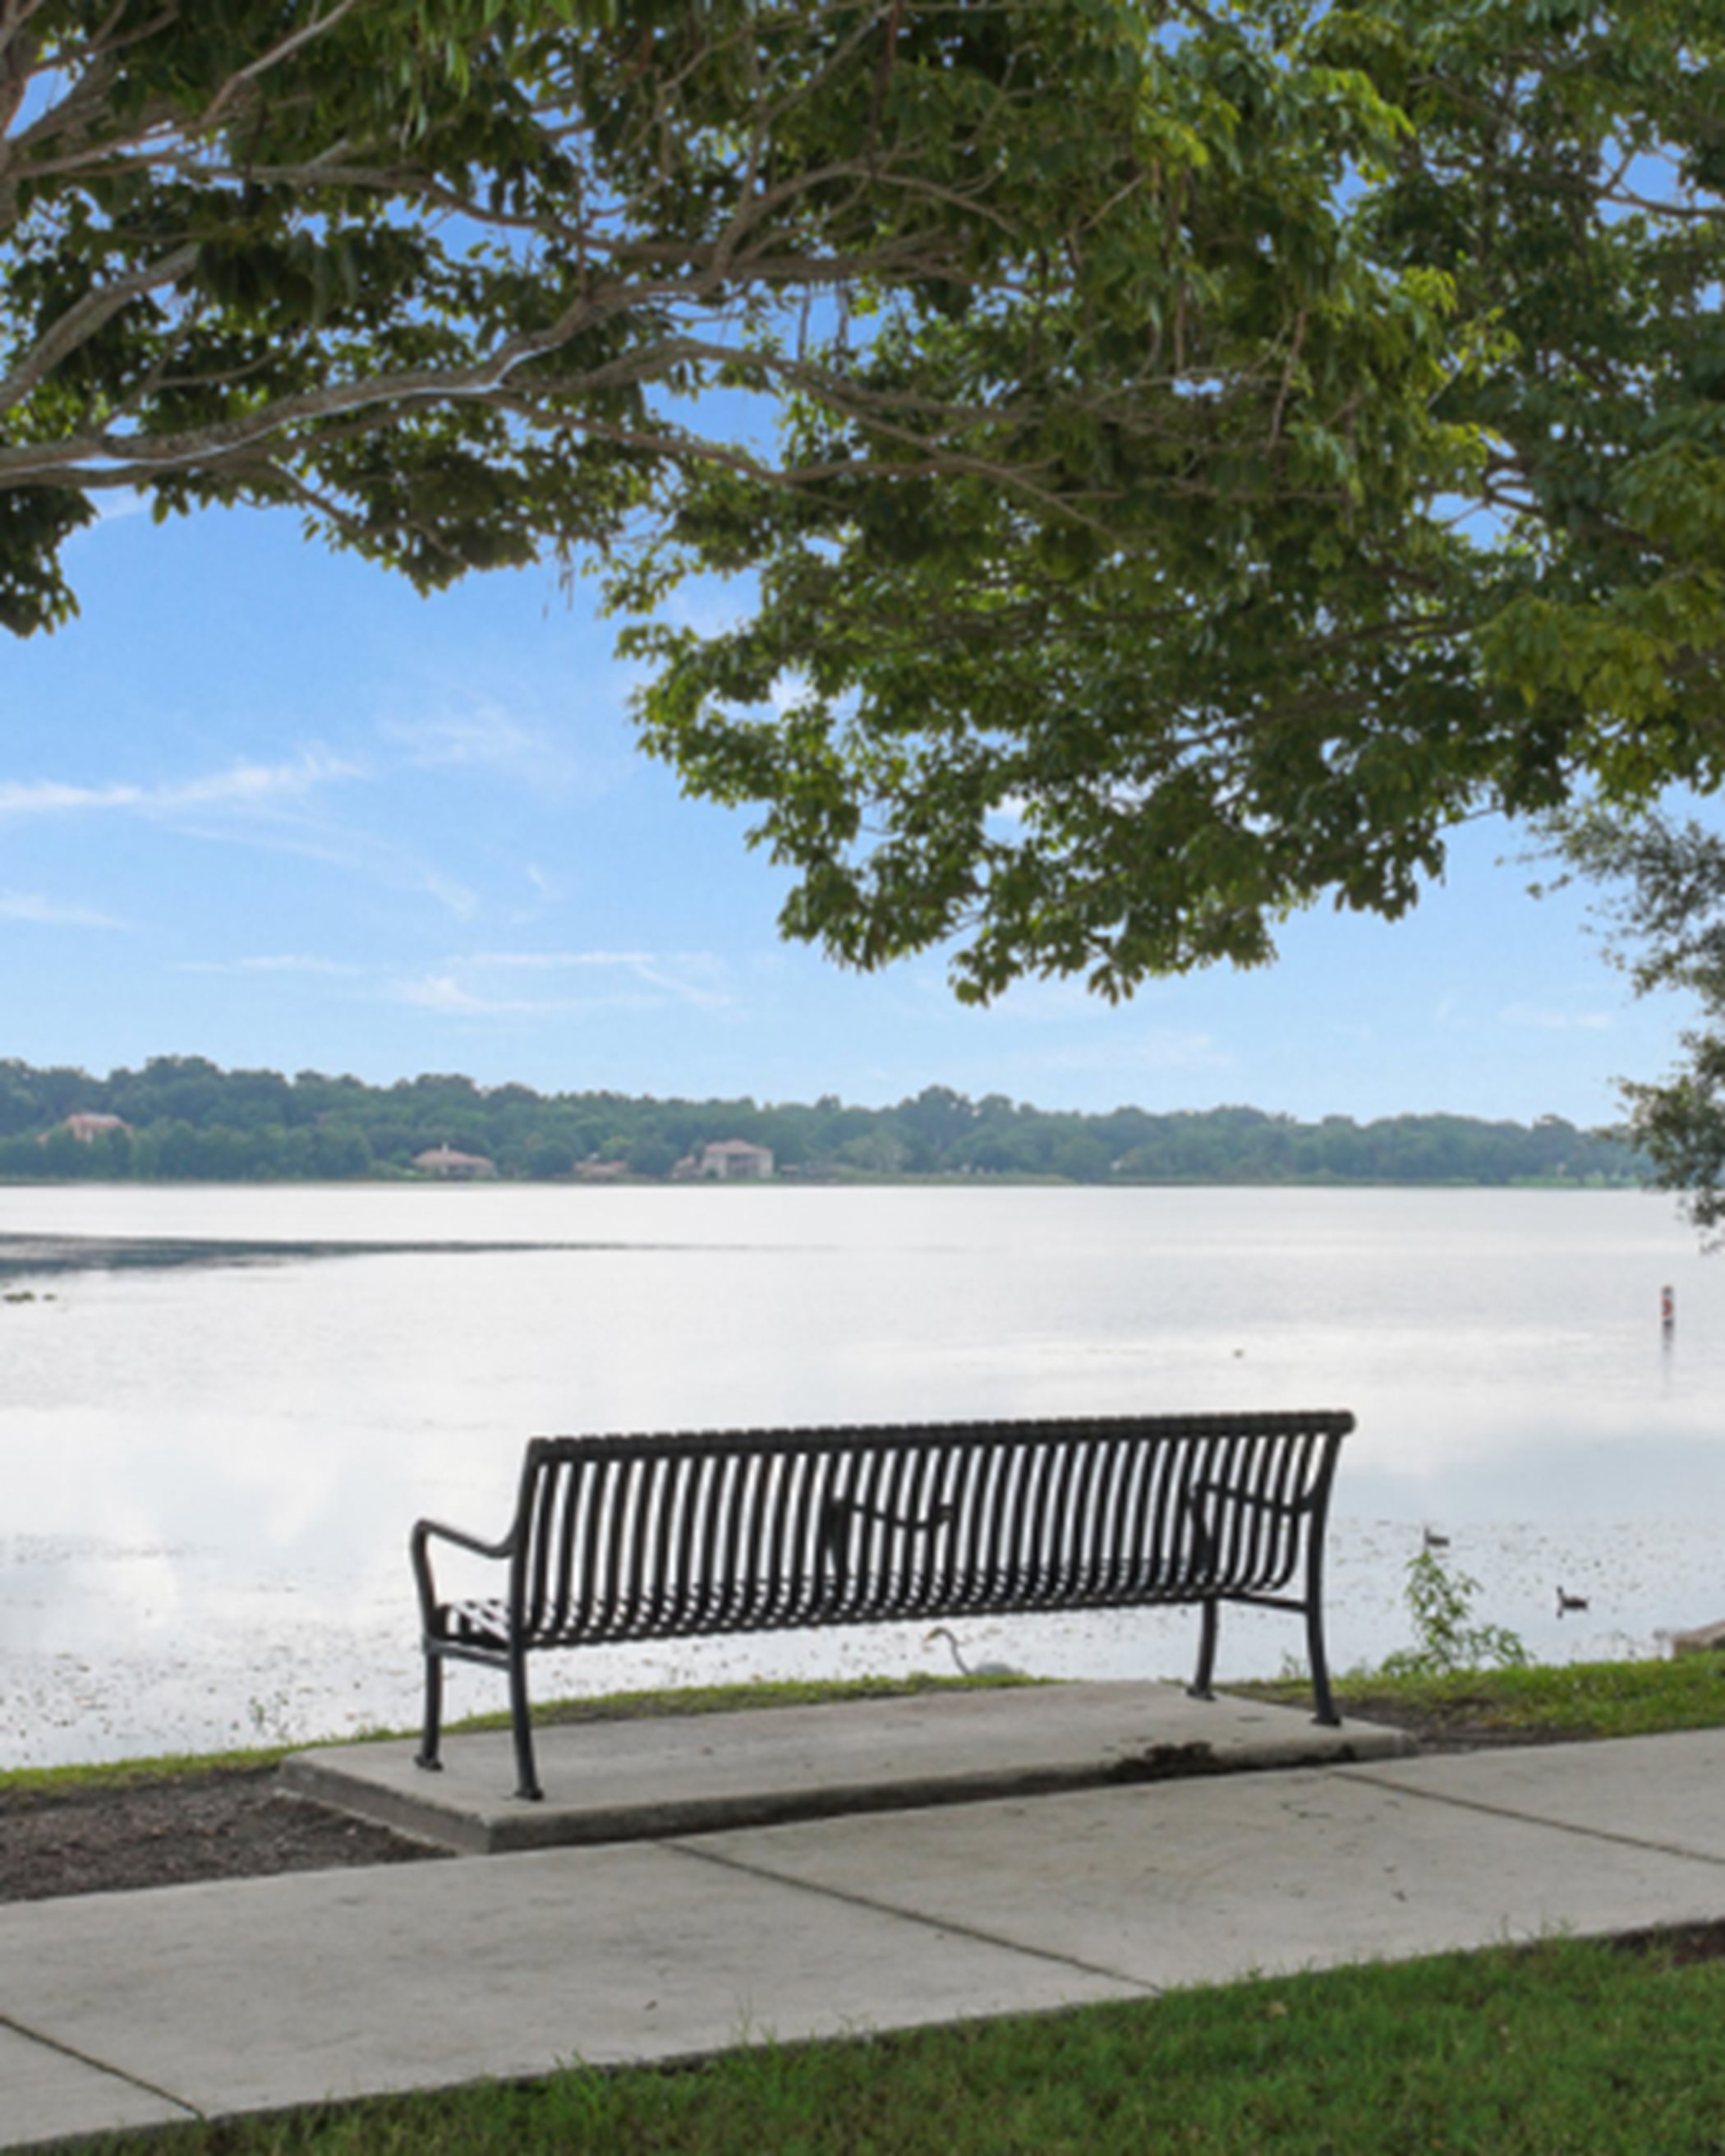 A bench by a lake